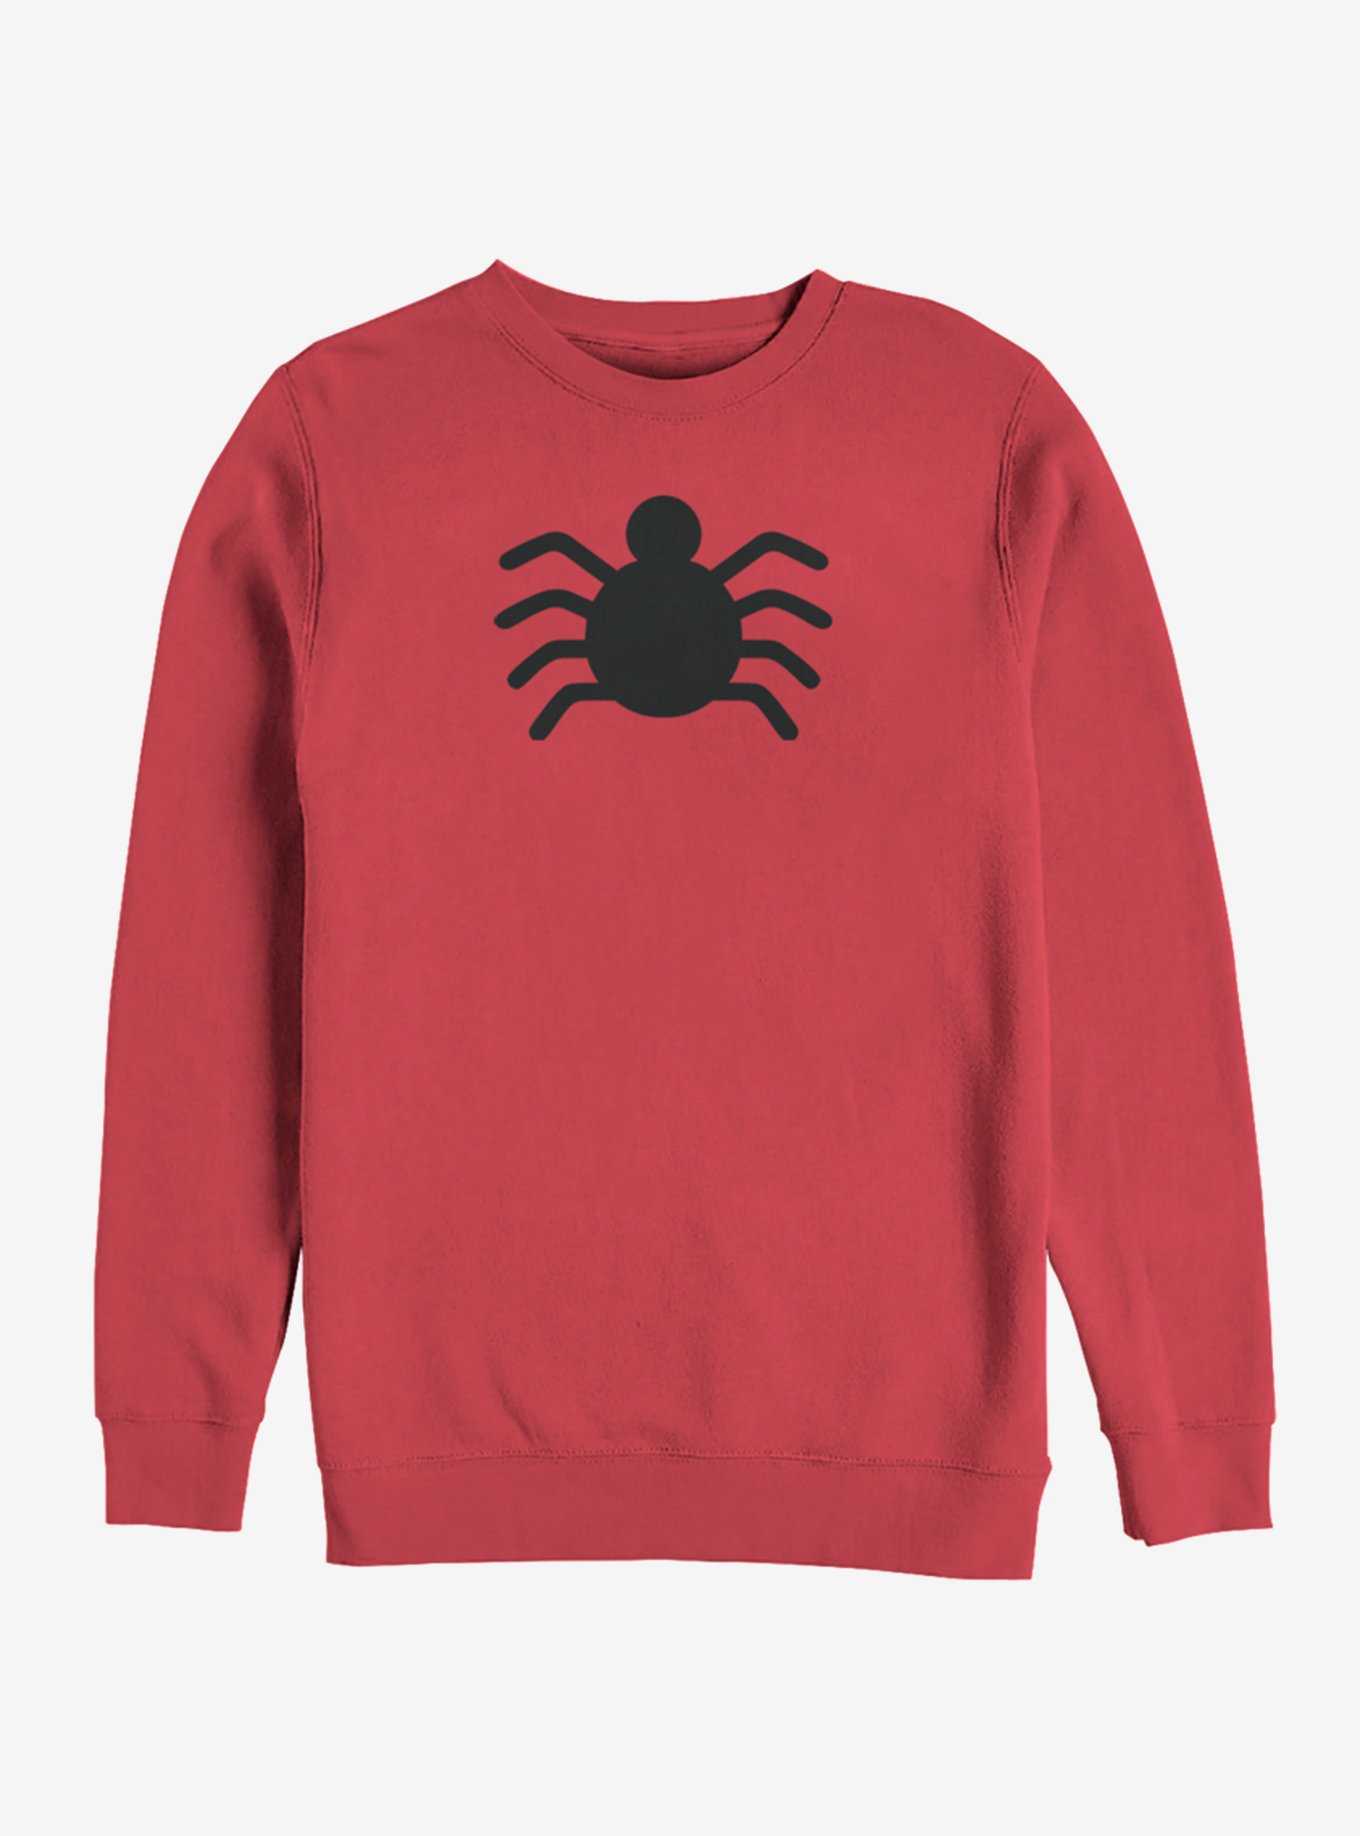 Marvel Spider-Man OG Spider-Man Icon Sweatshirt, , hi-res